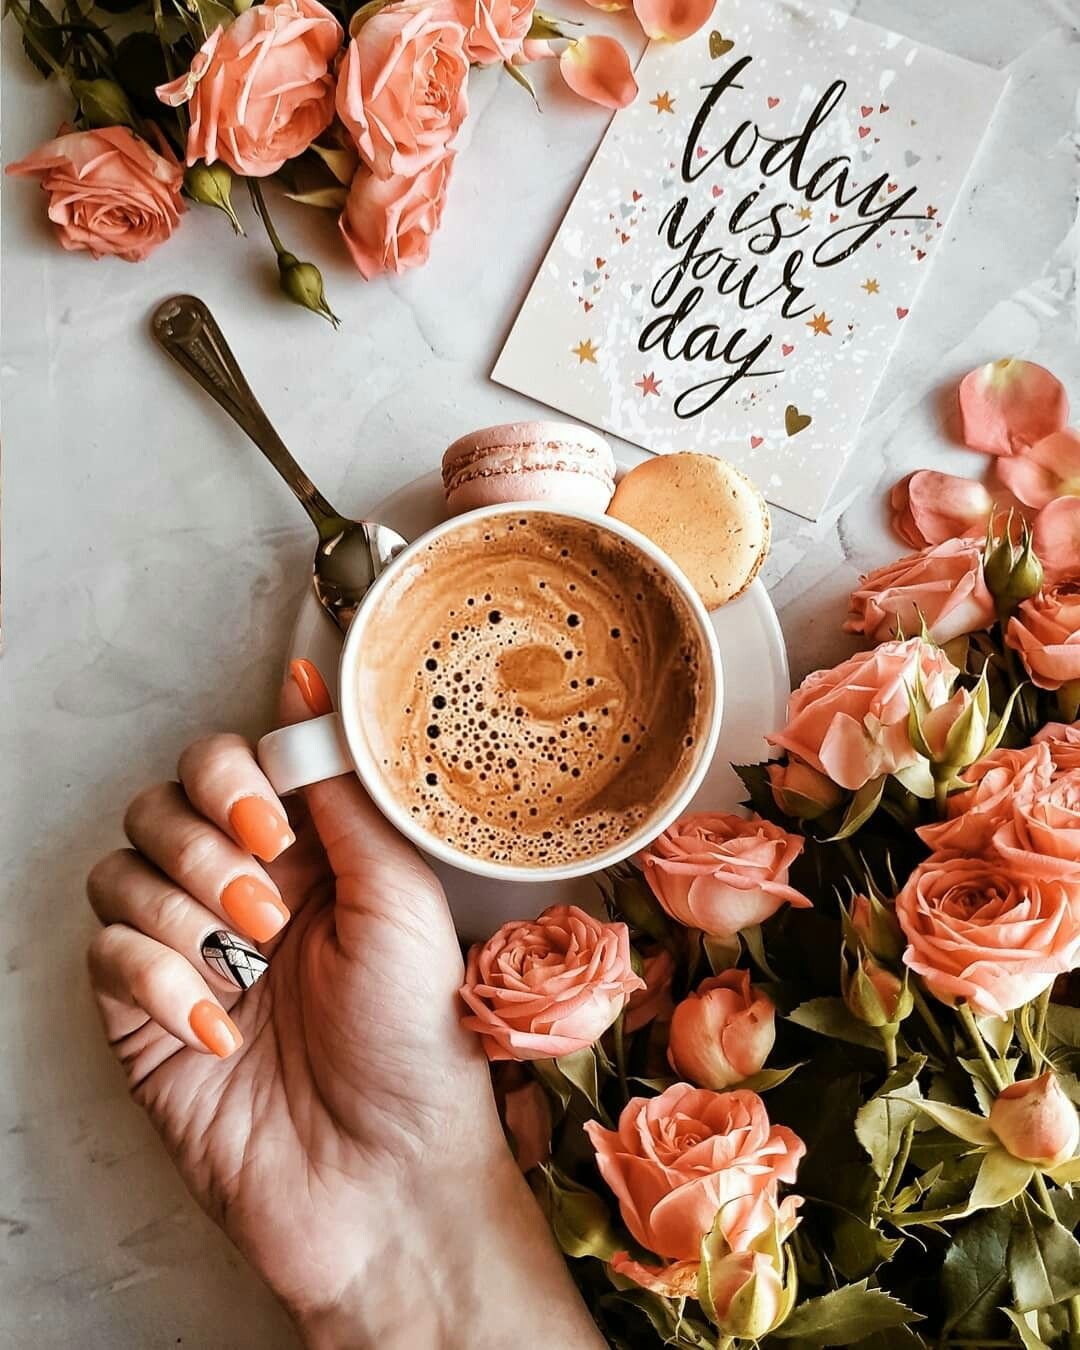 Доброго утра апреля стильные картинки. Кофе и цветы. Доброе утро салон красоты. Доброго дня кофе. Утро кофе цветы.